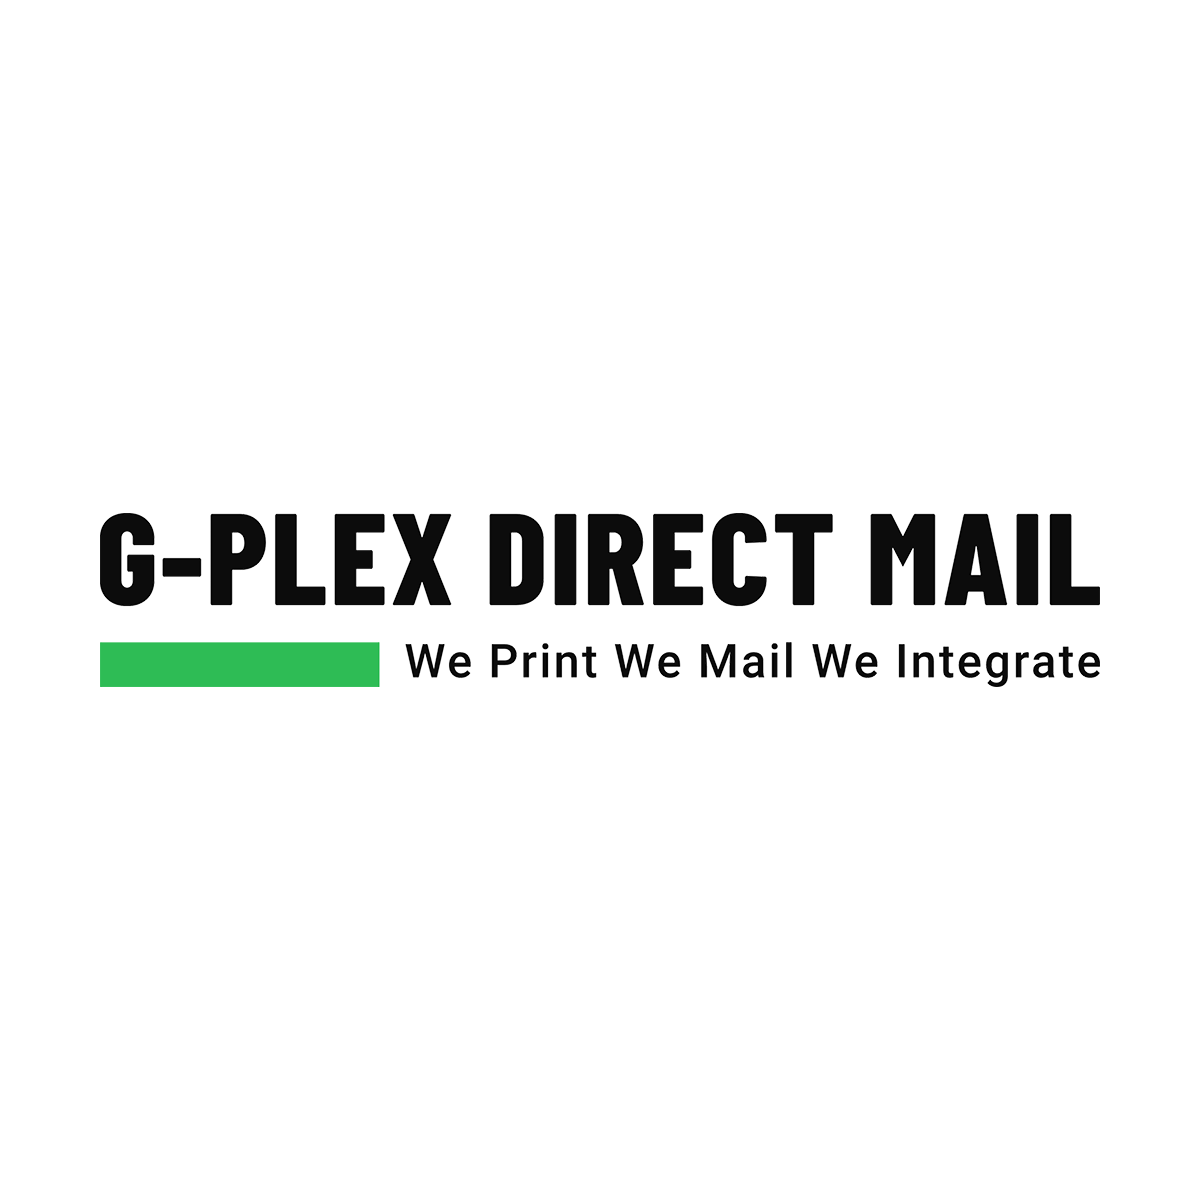 (c) Gplexdirectmail.com